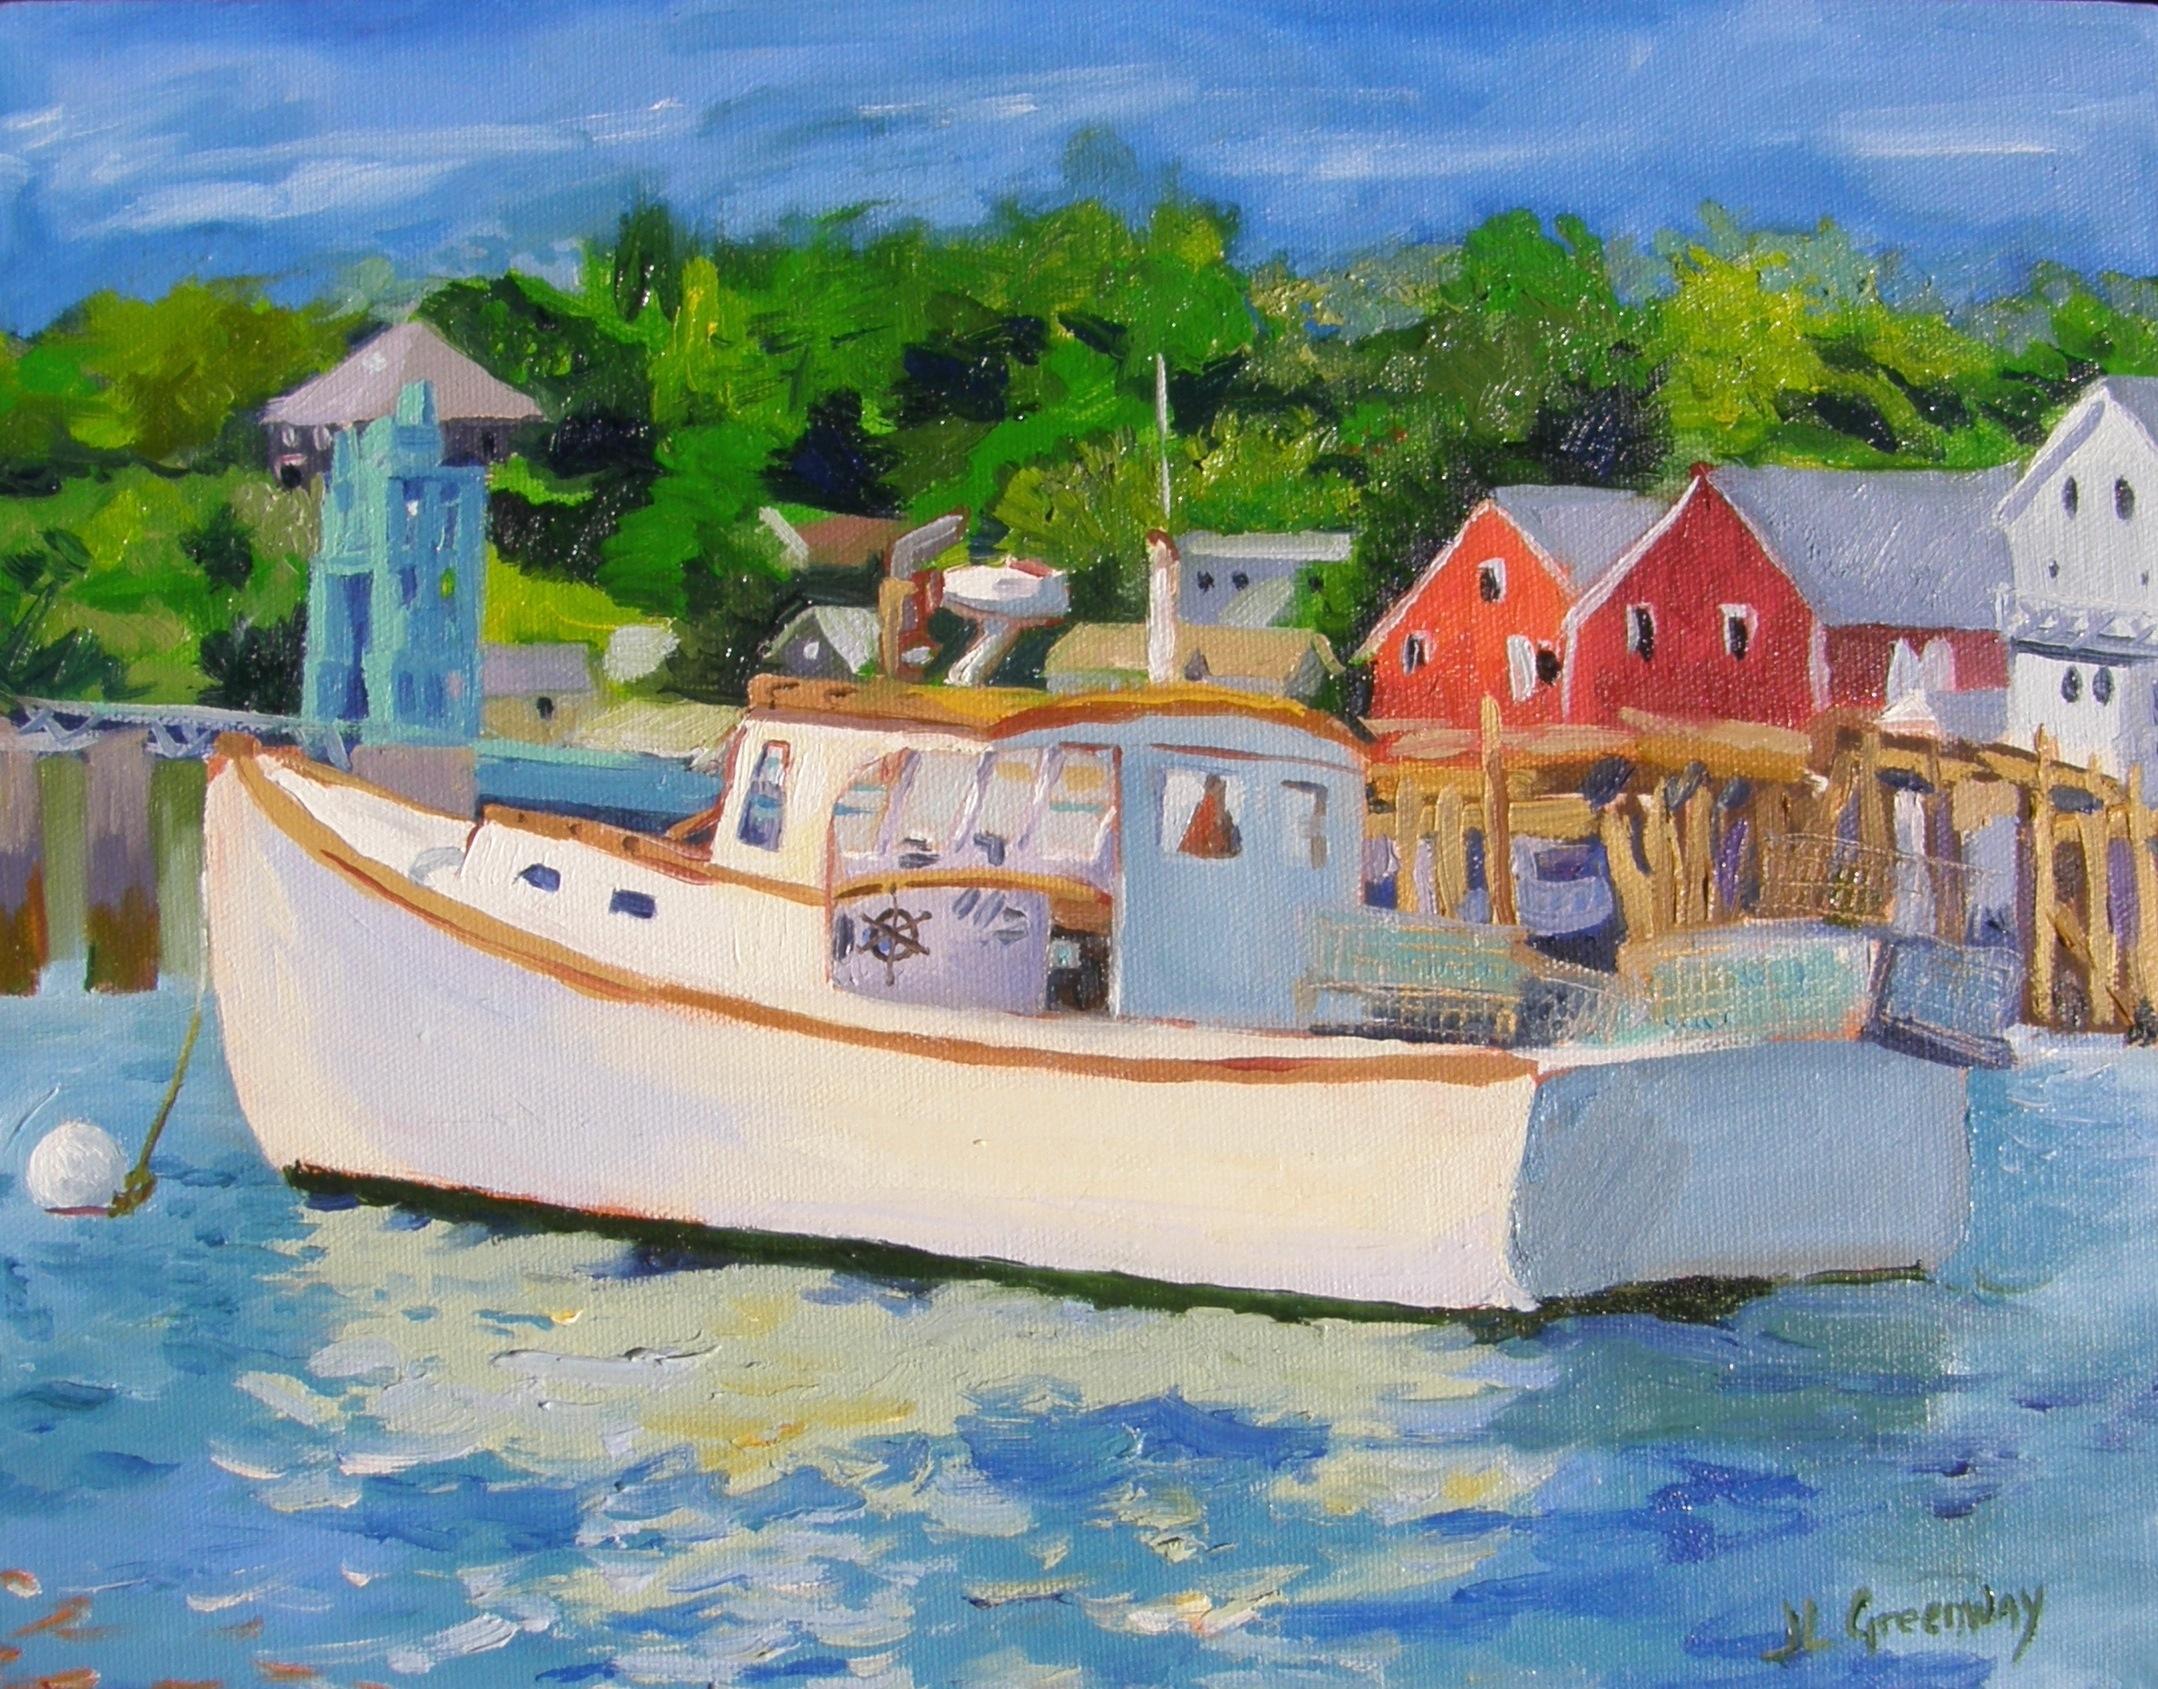 Peinture, huile sur toile, bateau à homard - Painting de Julia Greenway